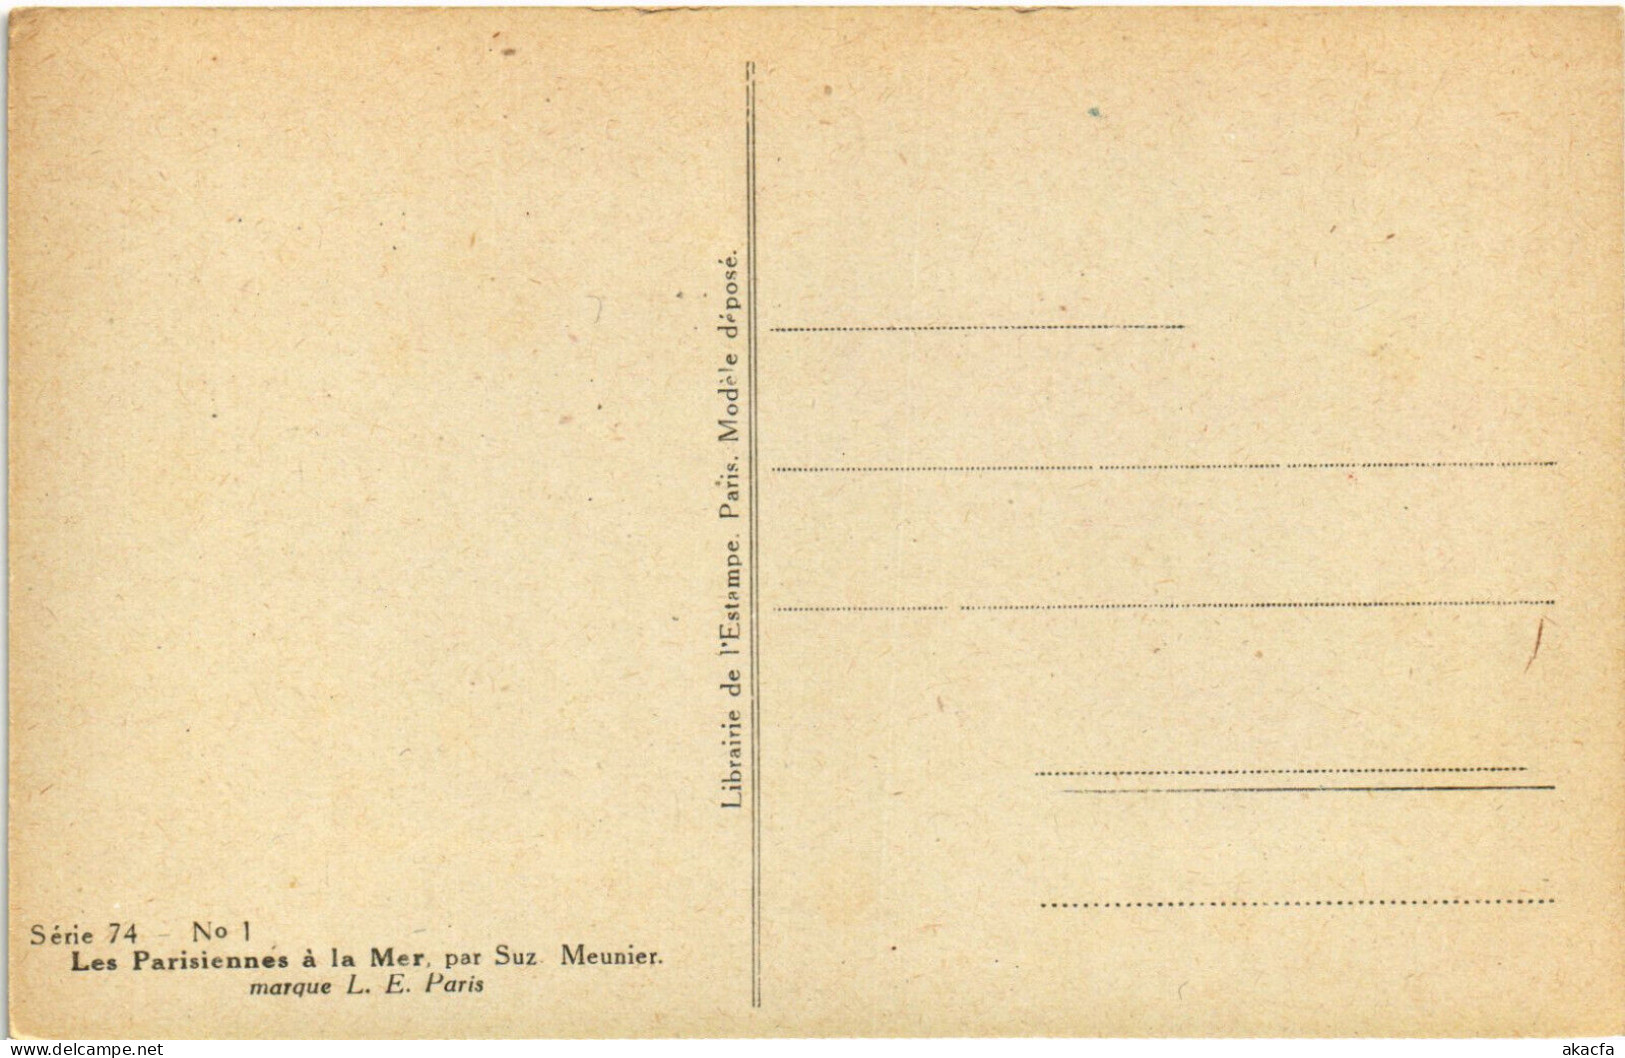 PC ARTIST SIGNED, MEUNIER, LES LARISIENNE A LA MER, Vintage Postcard (b51673) - Meunier, S.